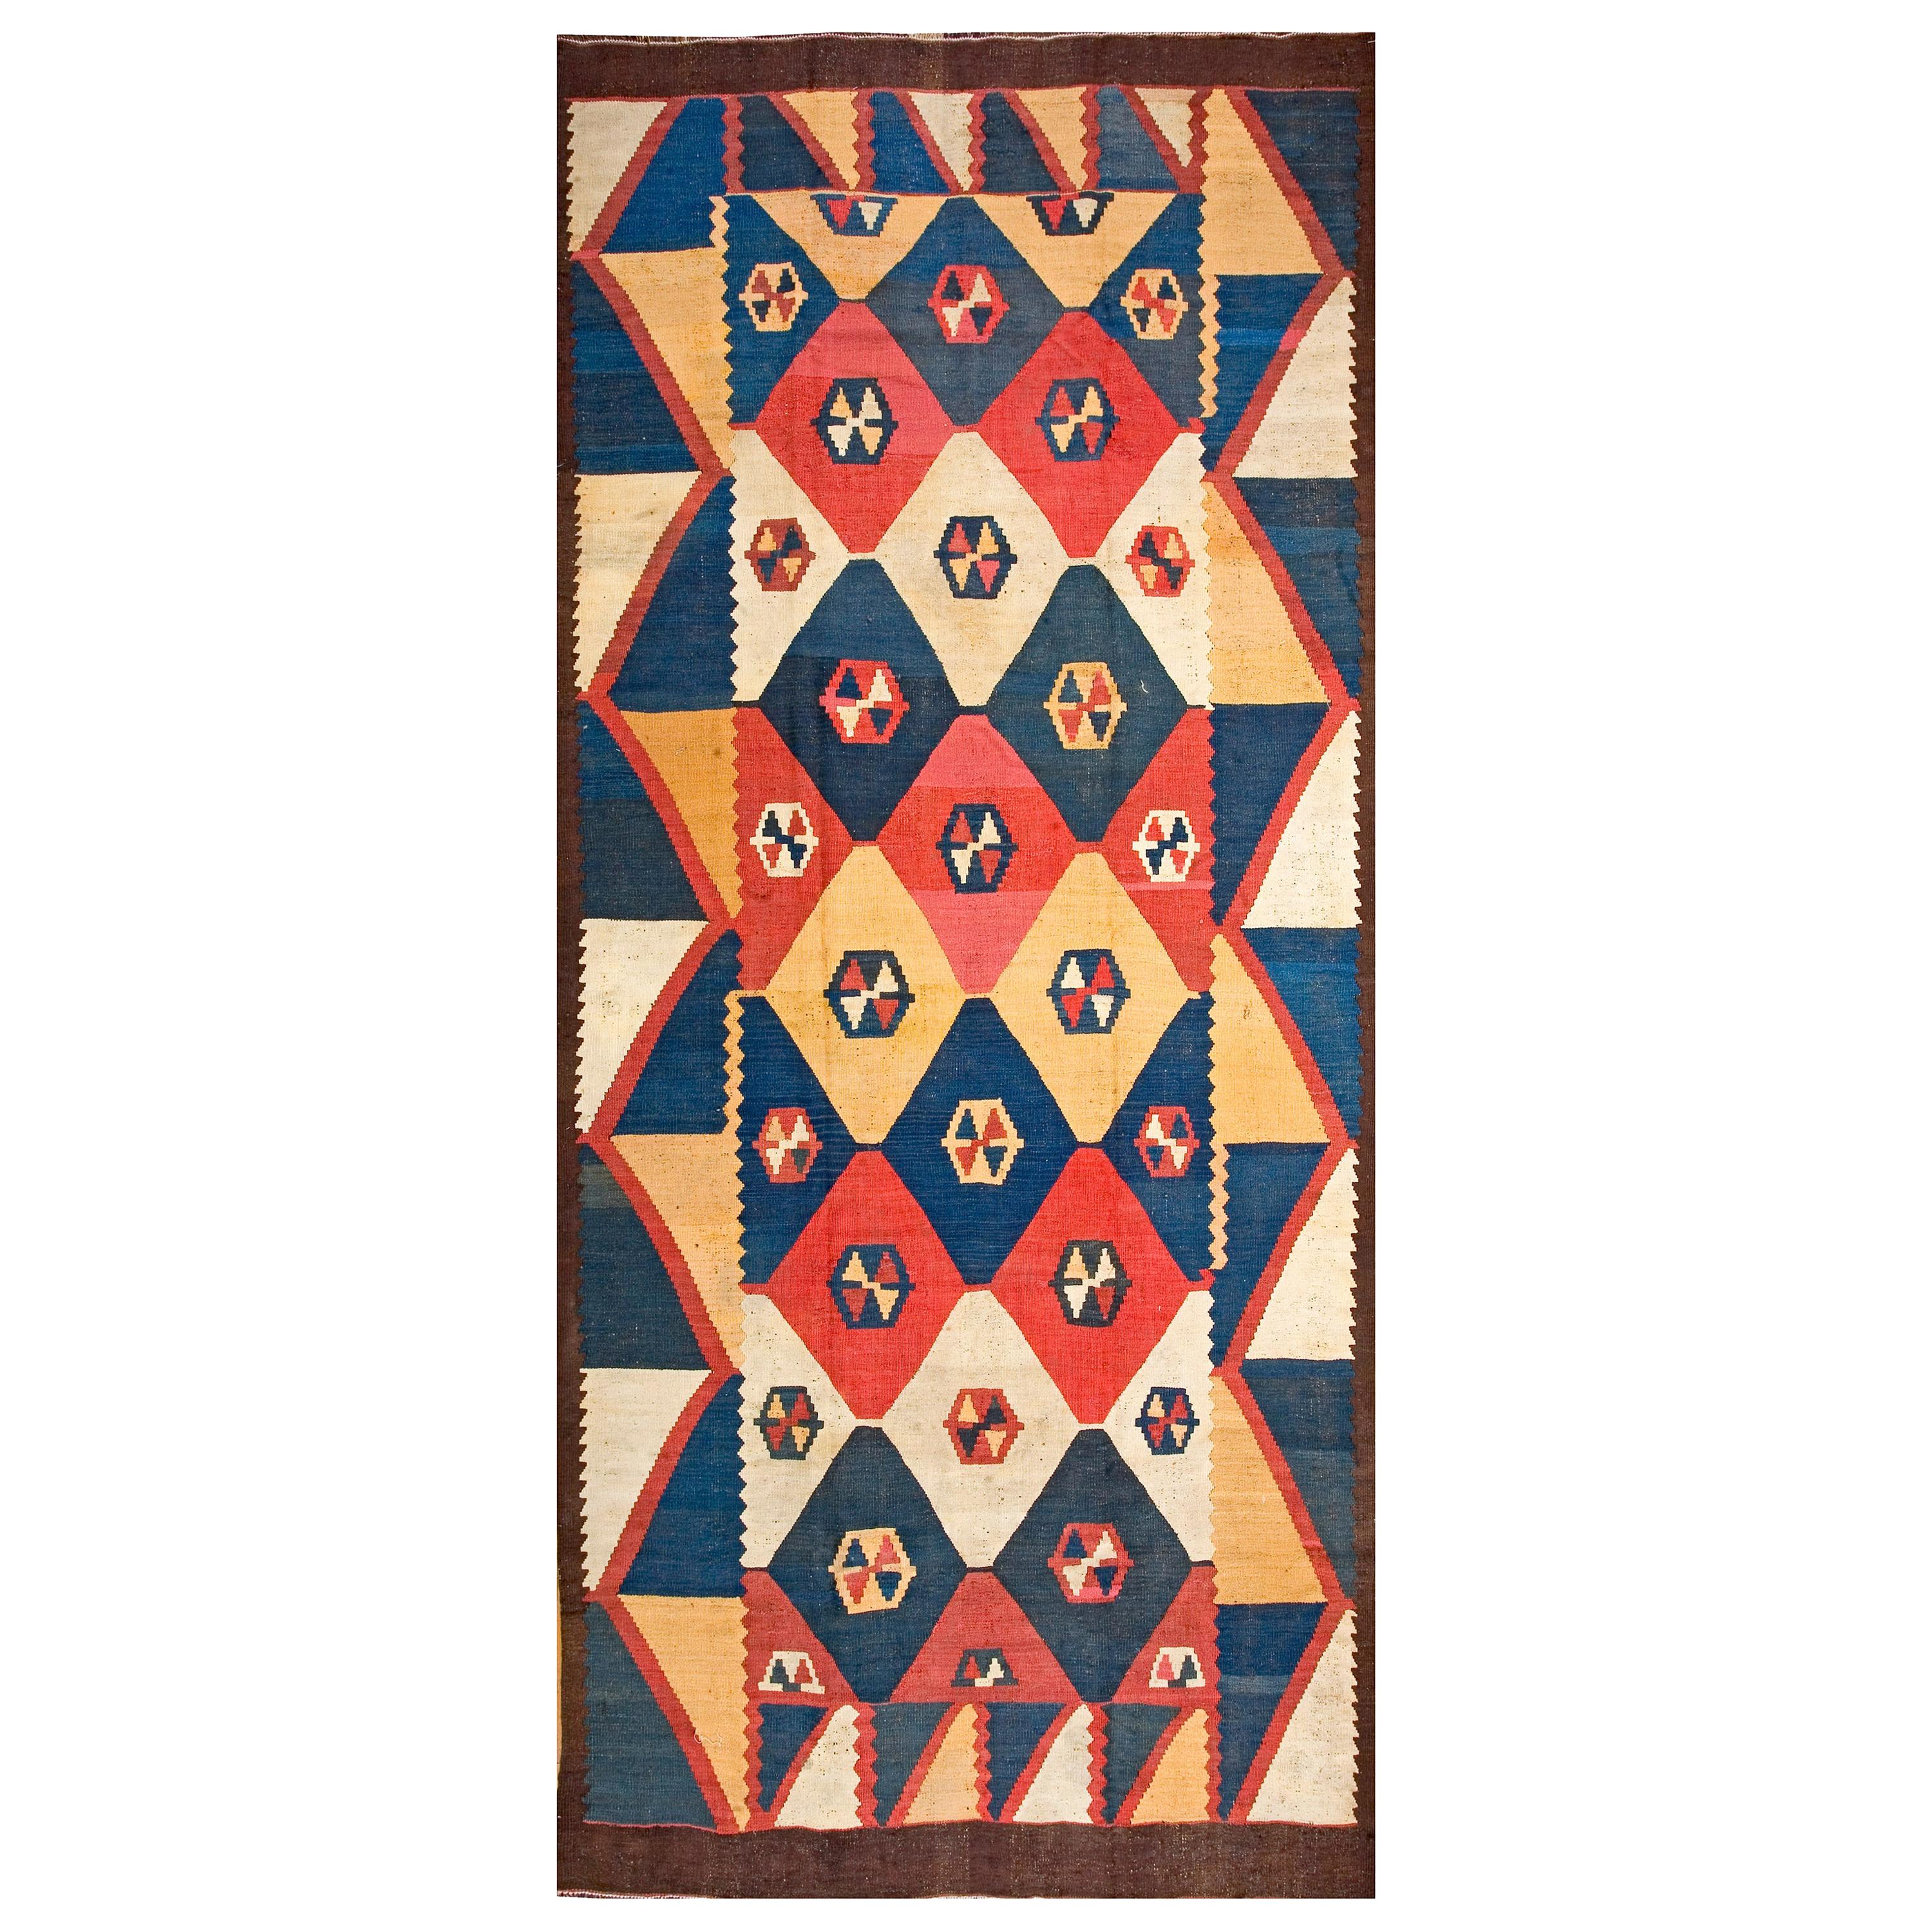 Zentralasiatische Tajik- Flachgewebe des frühen 20. Jahrhunderts ( 6'8" x 15'8" - 203 x 478")